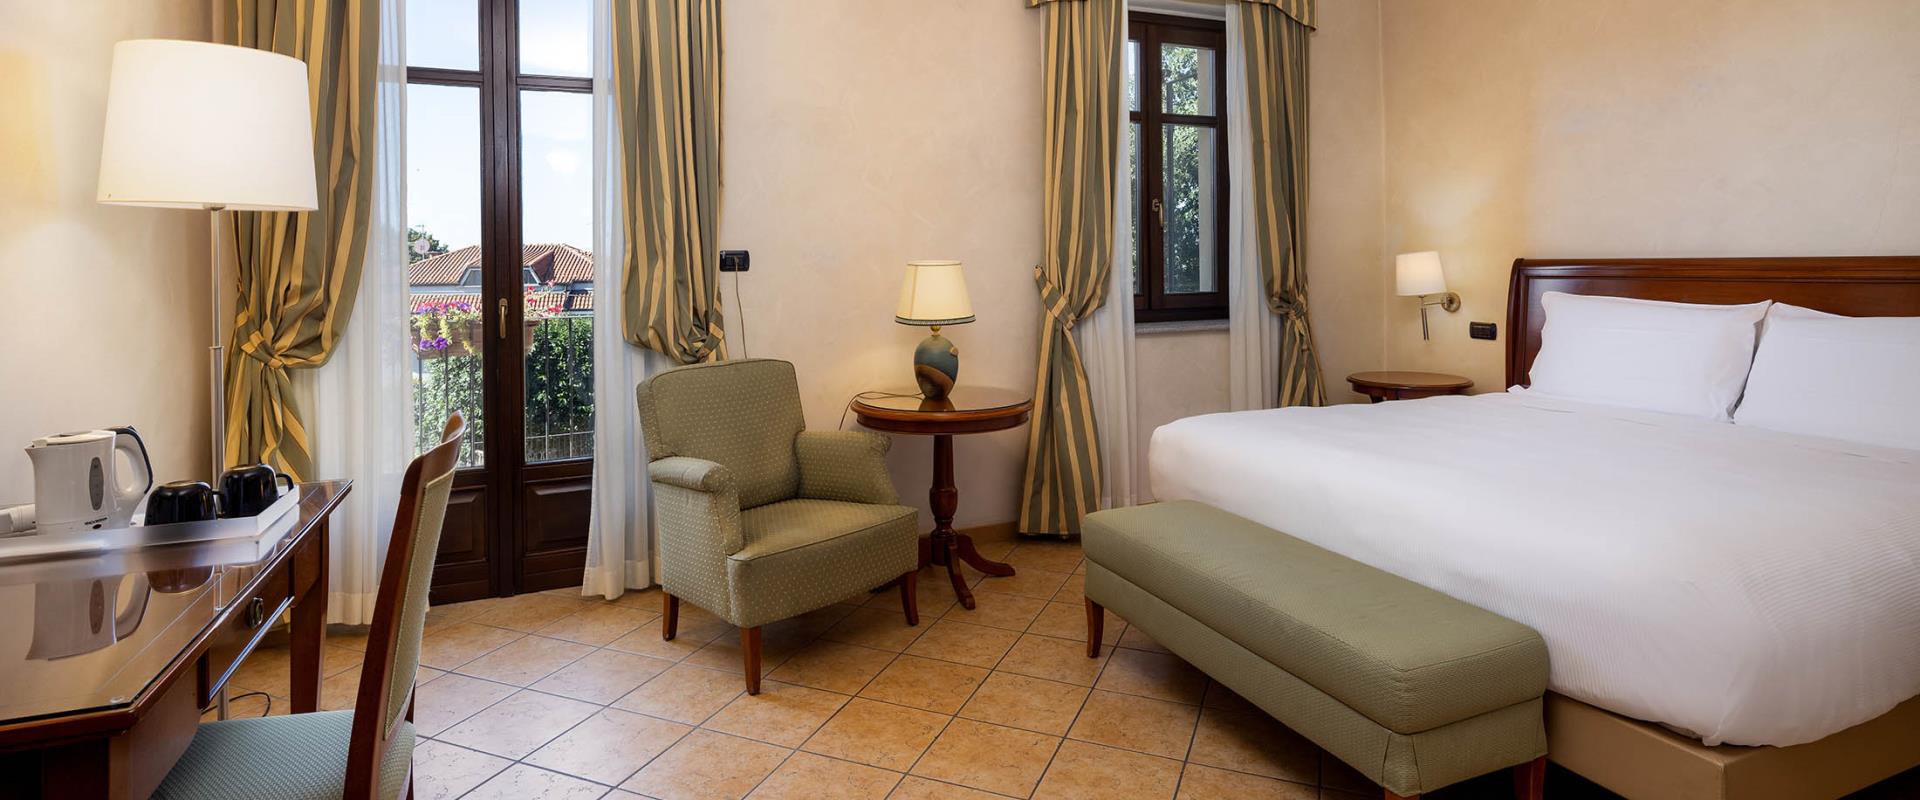 Vous cherchez un hôtel pour votre séjour près de aéroport de Turin Caselle? Réservez au BW Plus Hôtel  Le Rondini. Une combinaison d''''ancien, modernité et de détente!